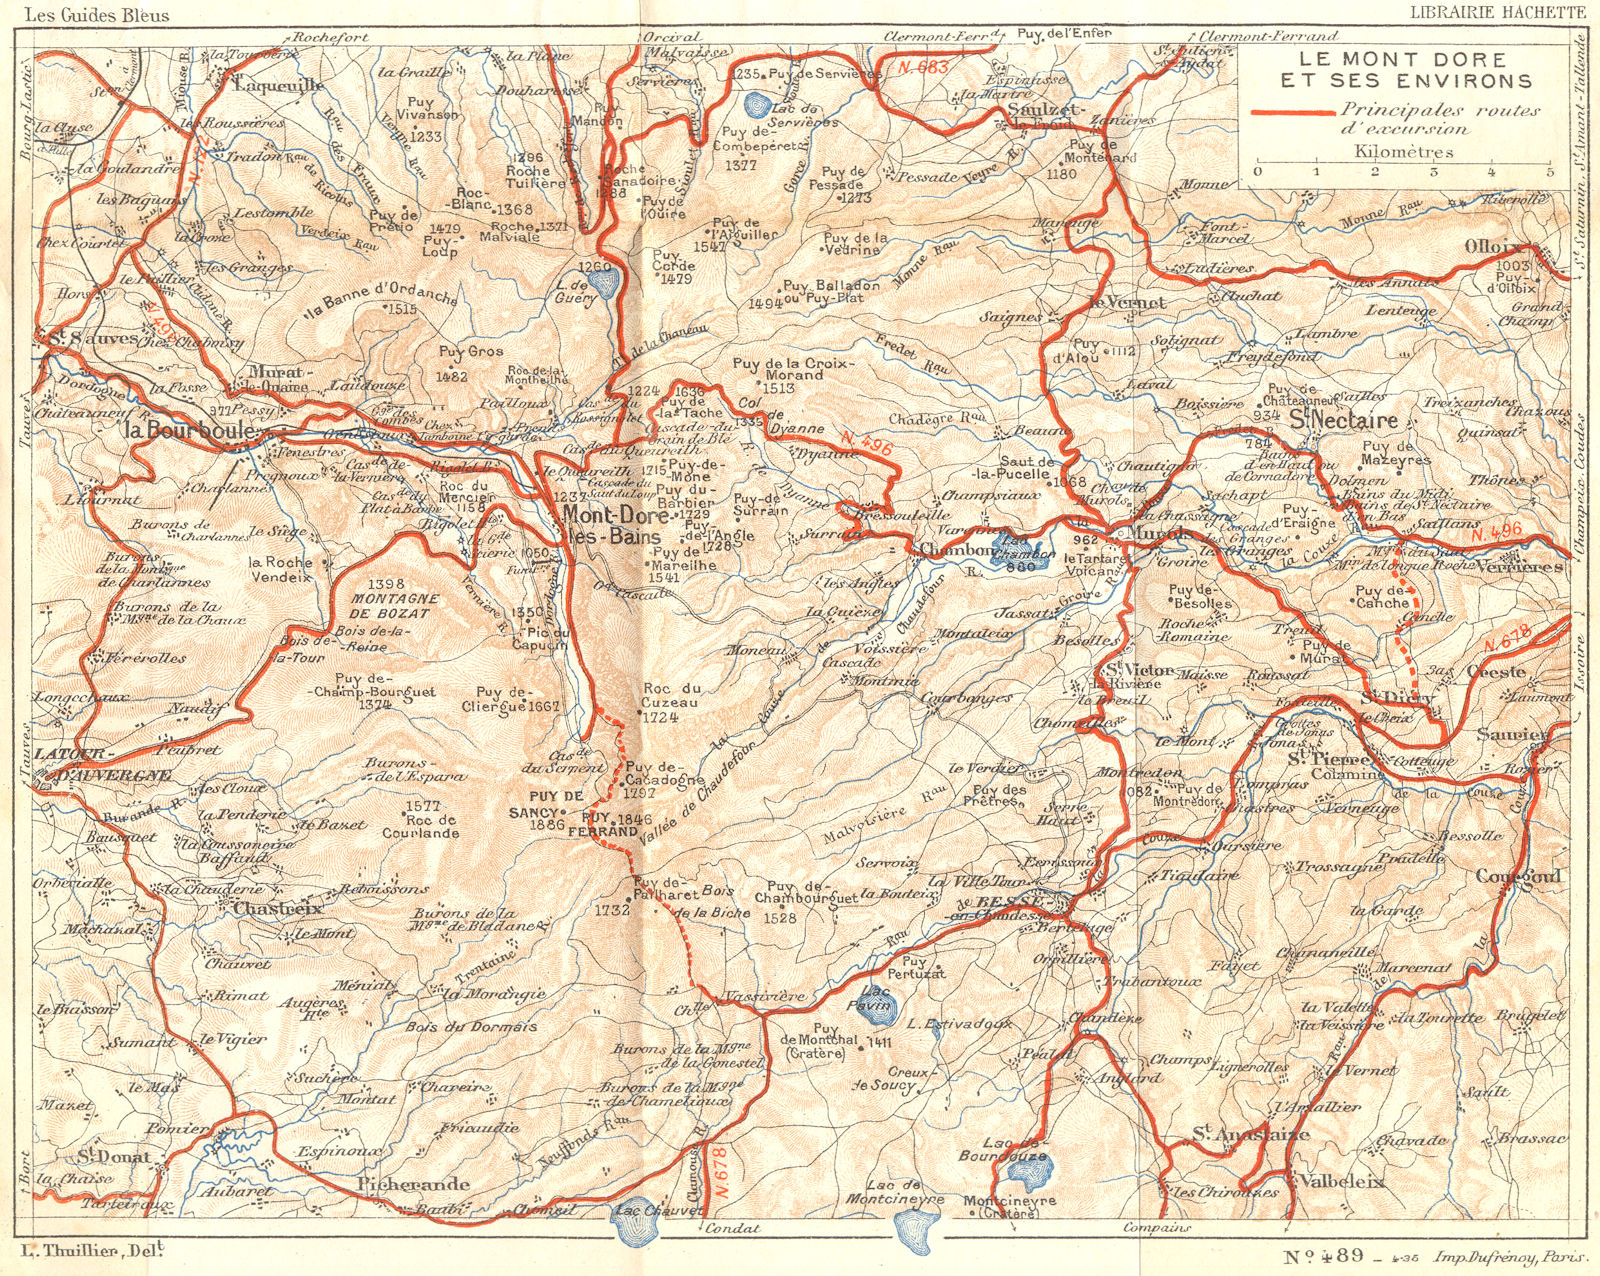 PUY-DE-DÔME. Mont Dore 1935 old vintage map plan chart